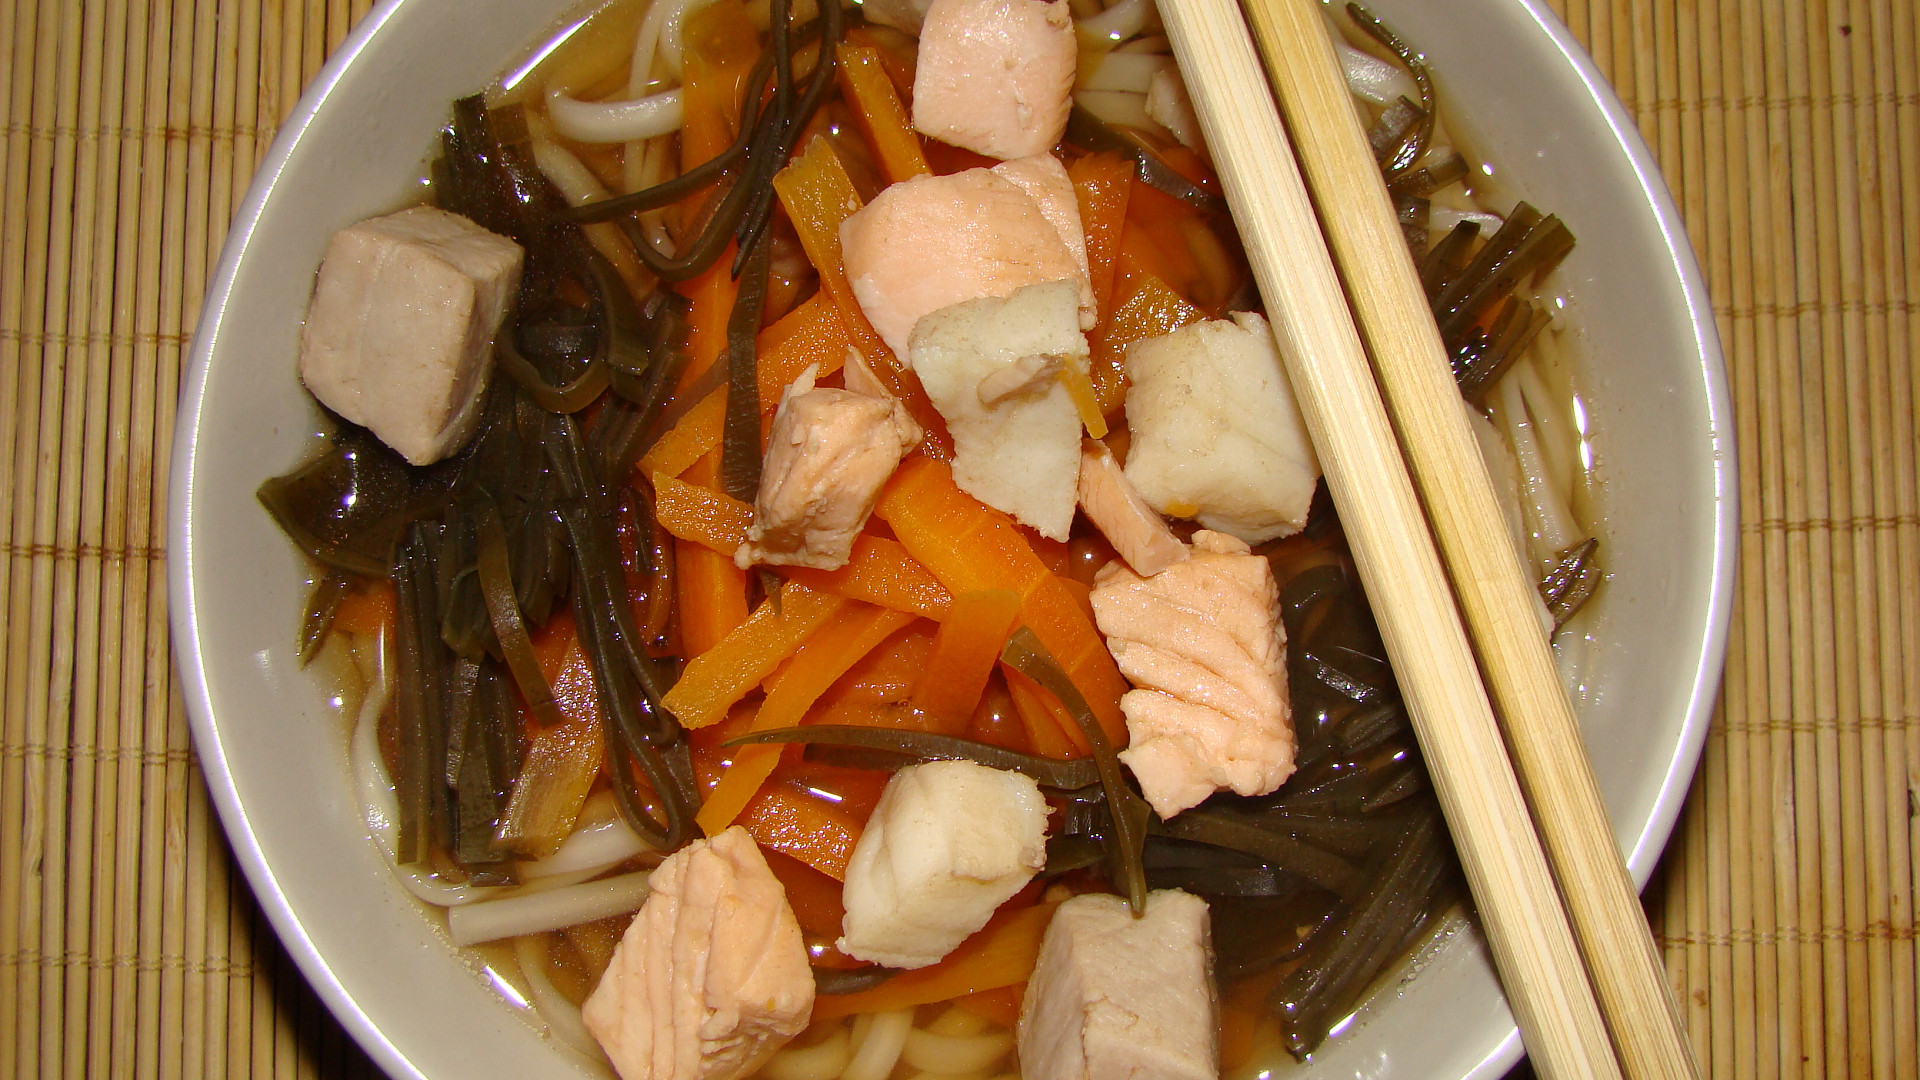 Mioshiru /tradiční japonská polévka/ s třemi druhy ryb.